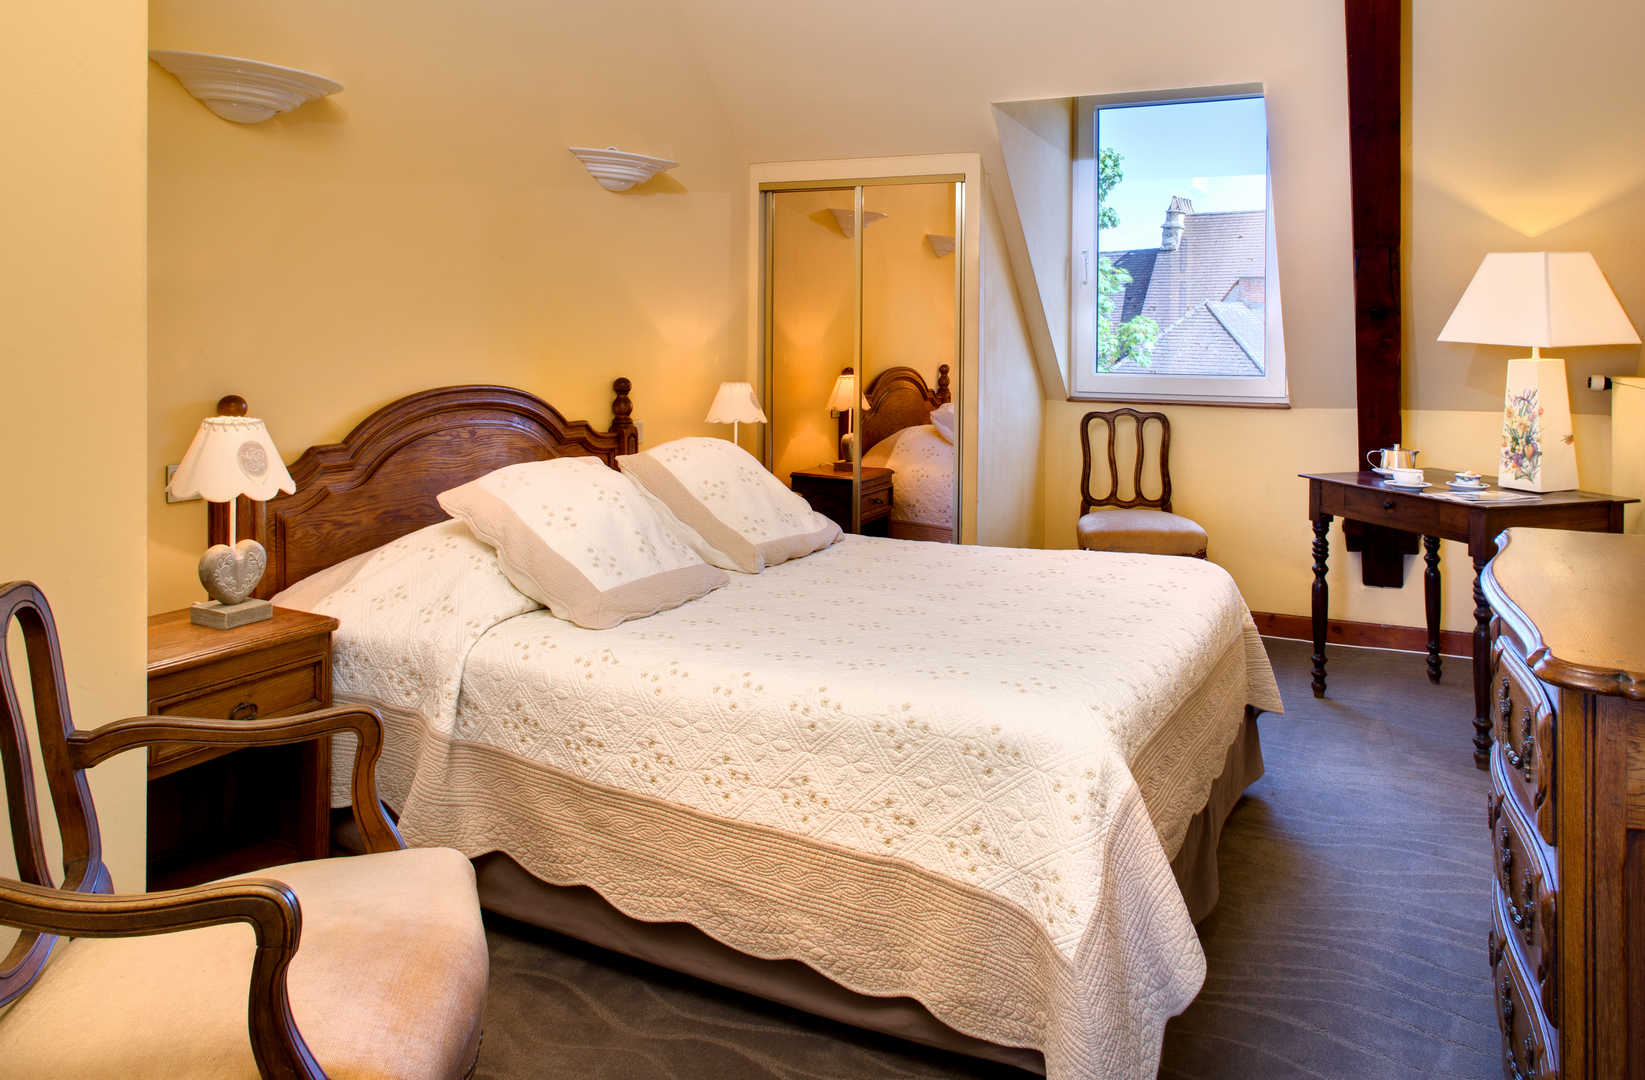 Vue d'une chambre avec parure de lit blanche dans l'hôtel de charme en Dordogne, l'Esplanade